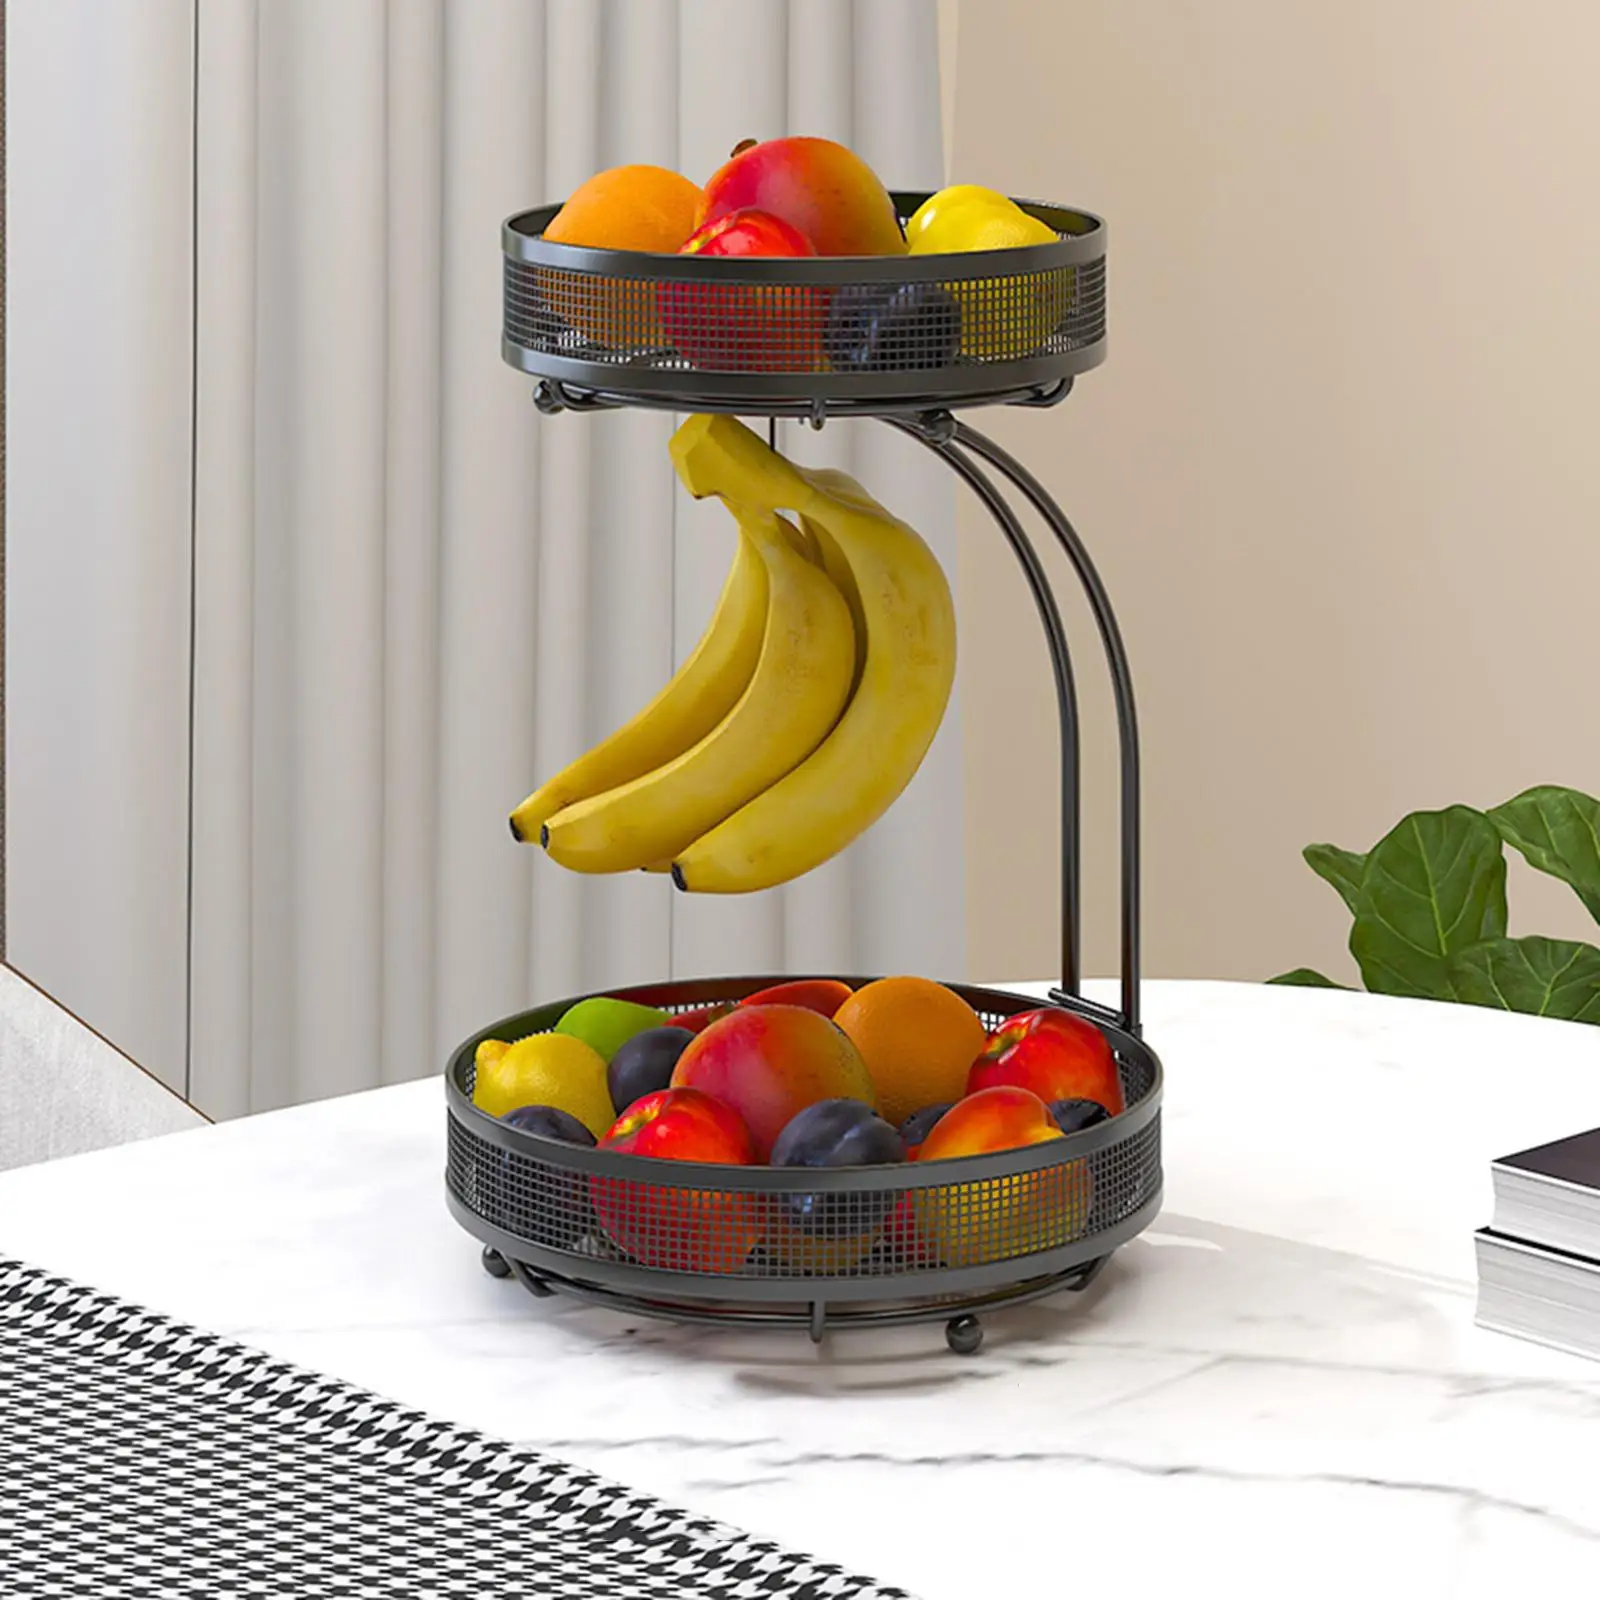 Metal 2 Tier Fruit Vegetables Basket with Banana Hanger Multifunction Fruit Vegetable Storage Holder Display for Vegetables